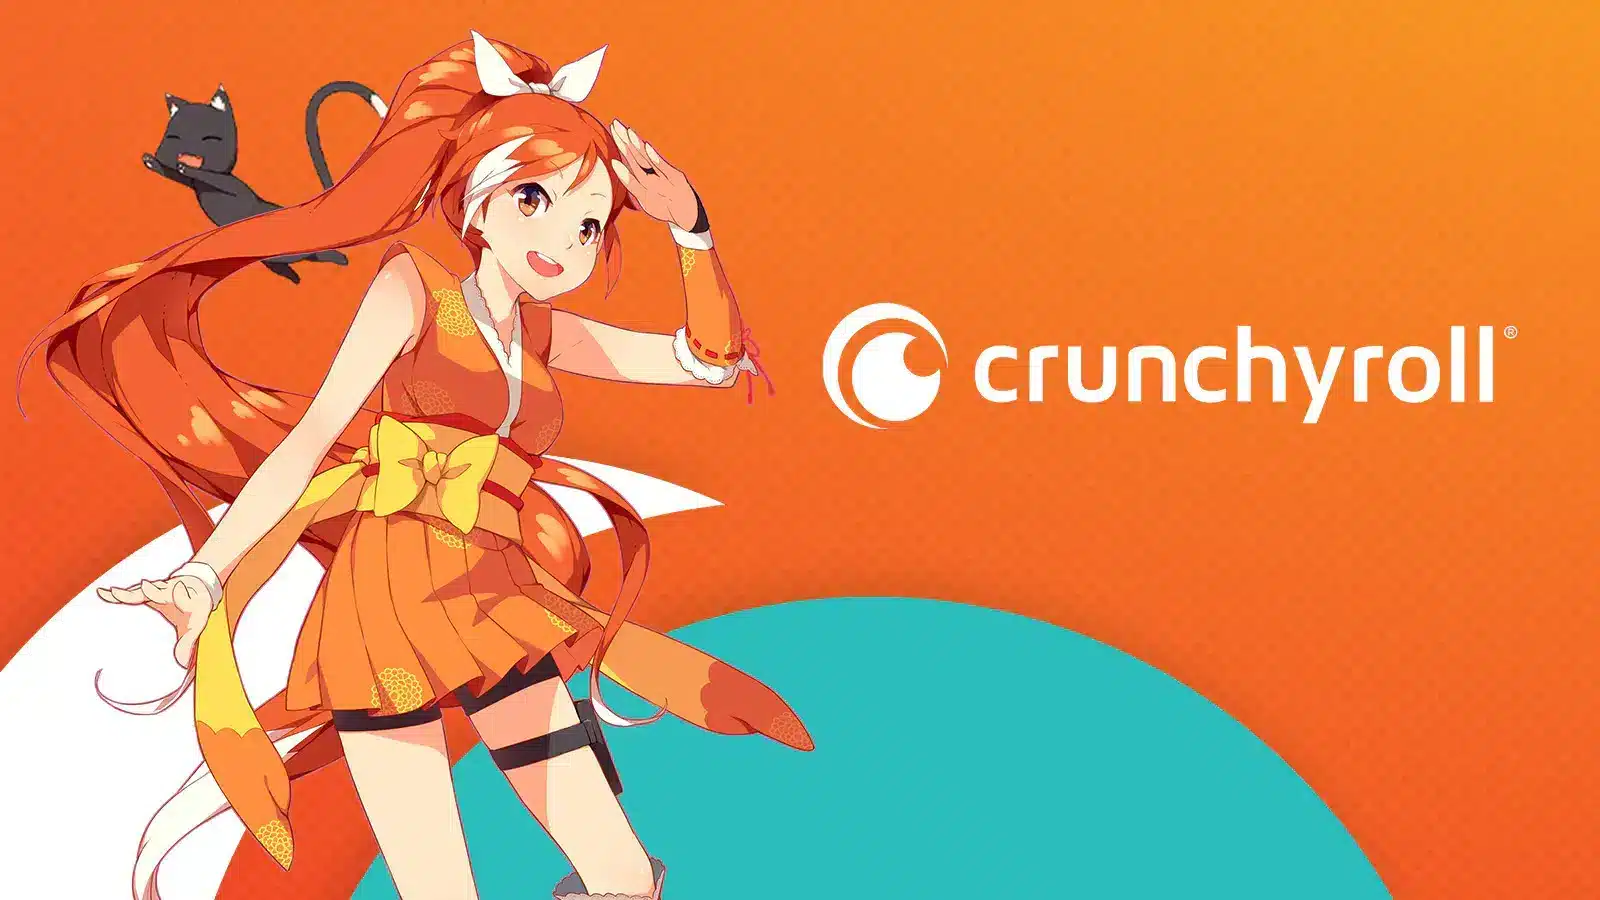 Crunchyroll channel